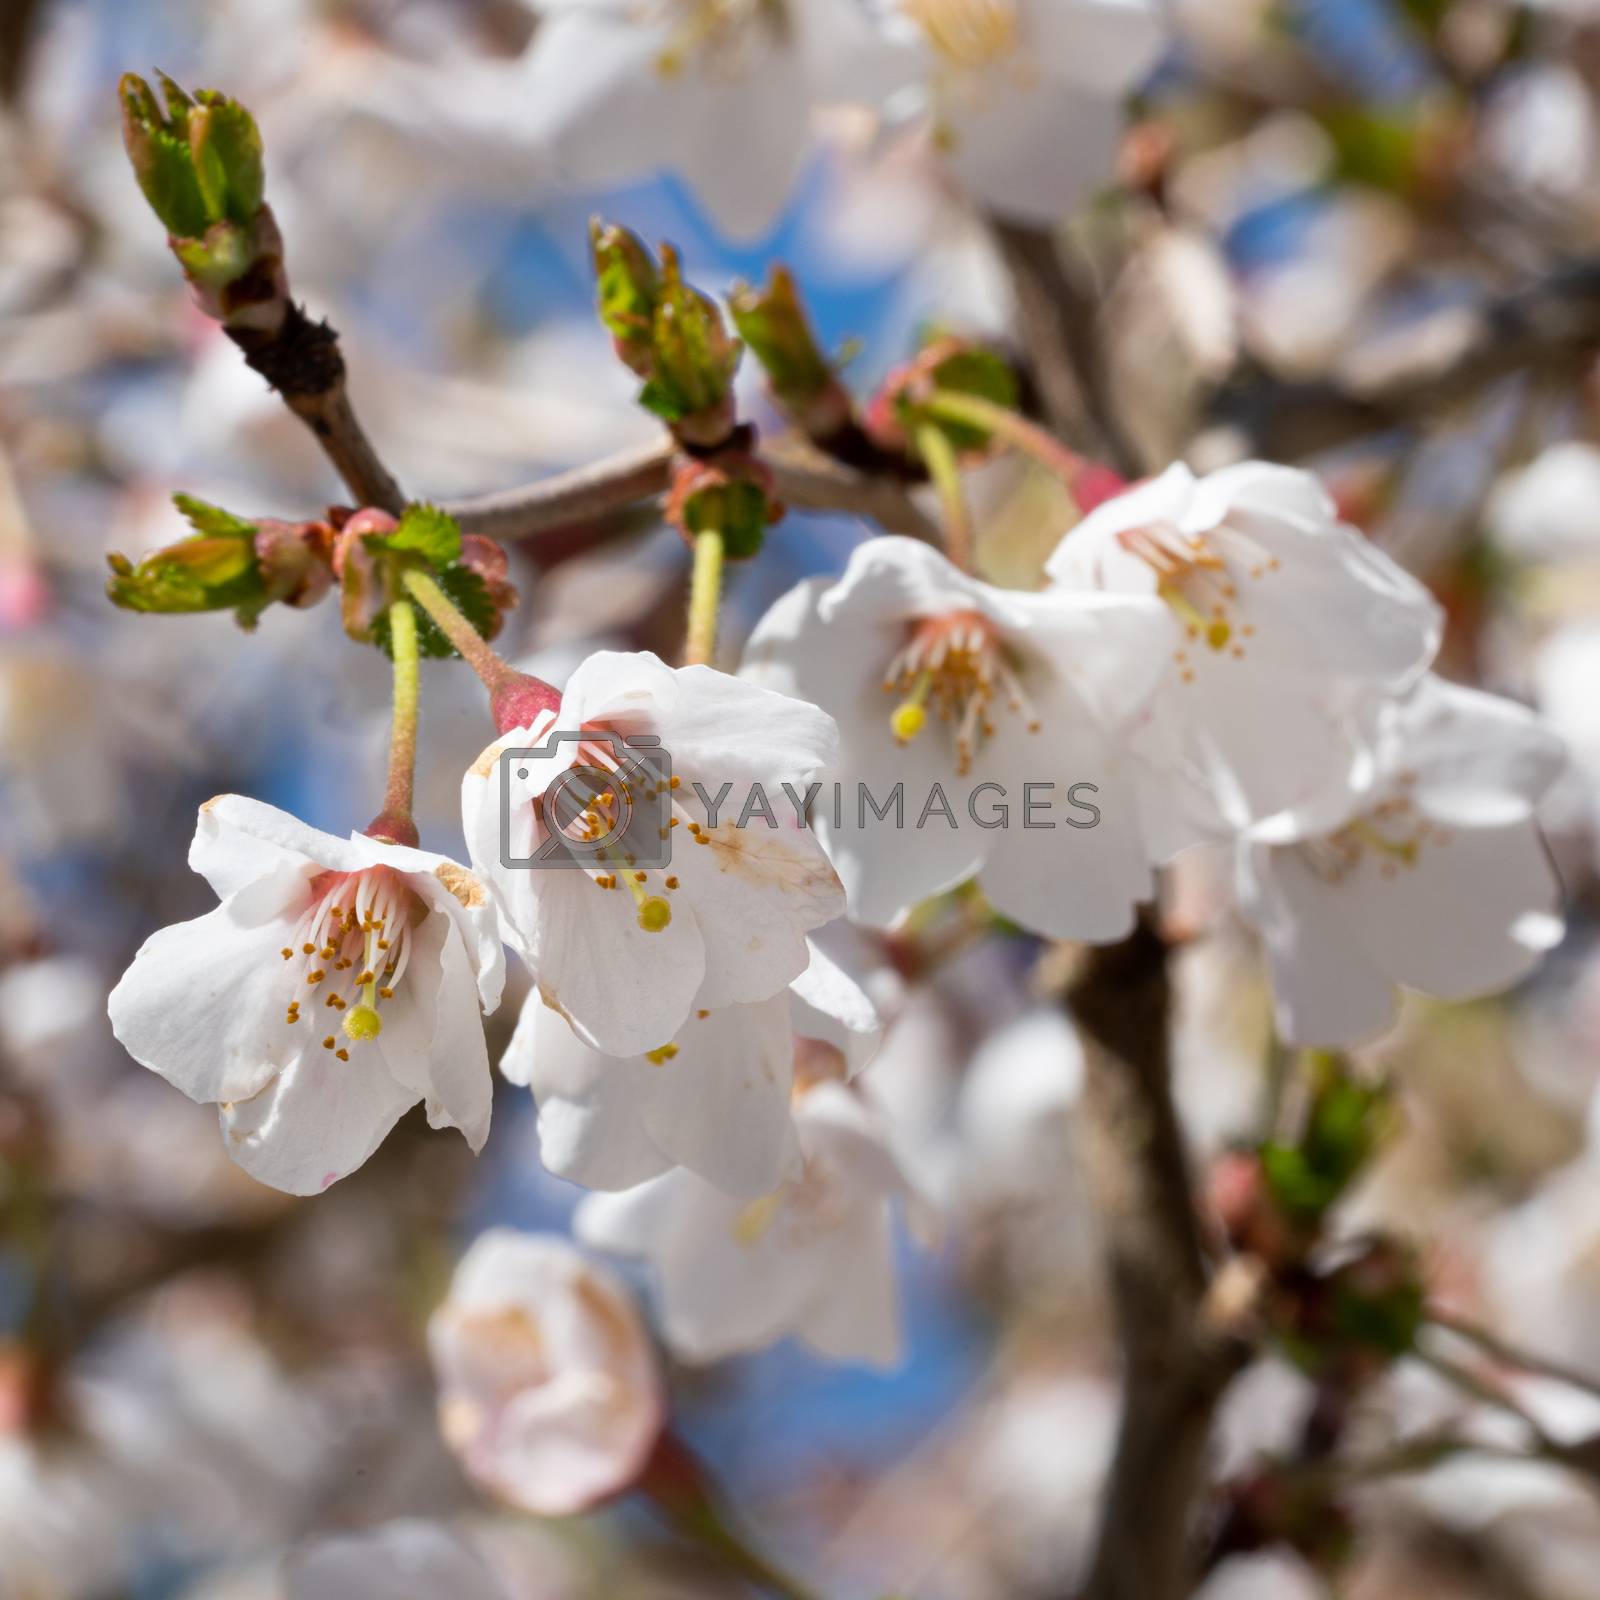 Royalty free image of Fuji cherry, Prunus incisa by alfotokunst